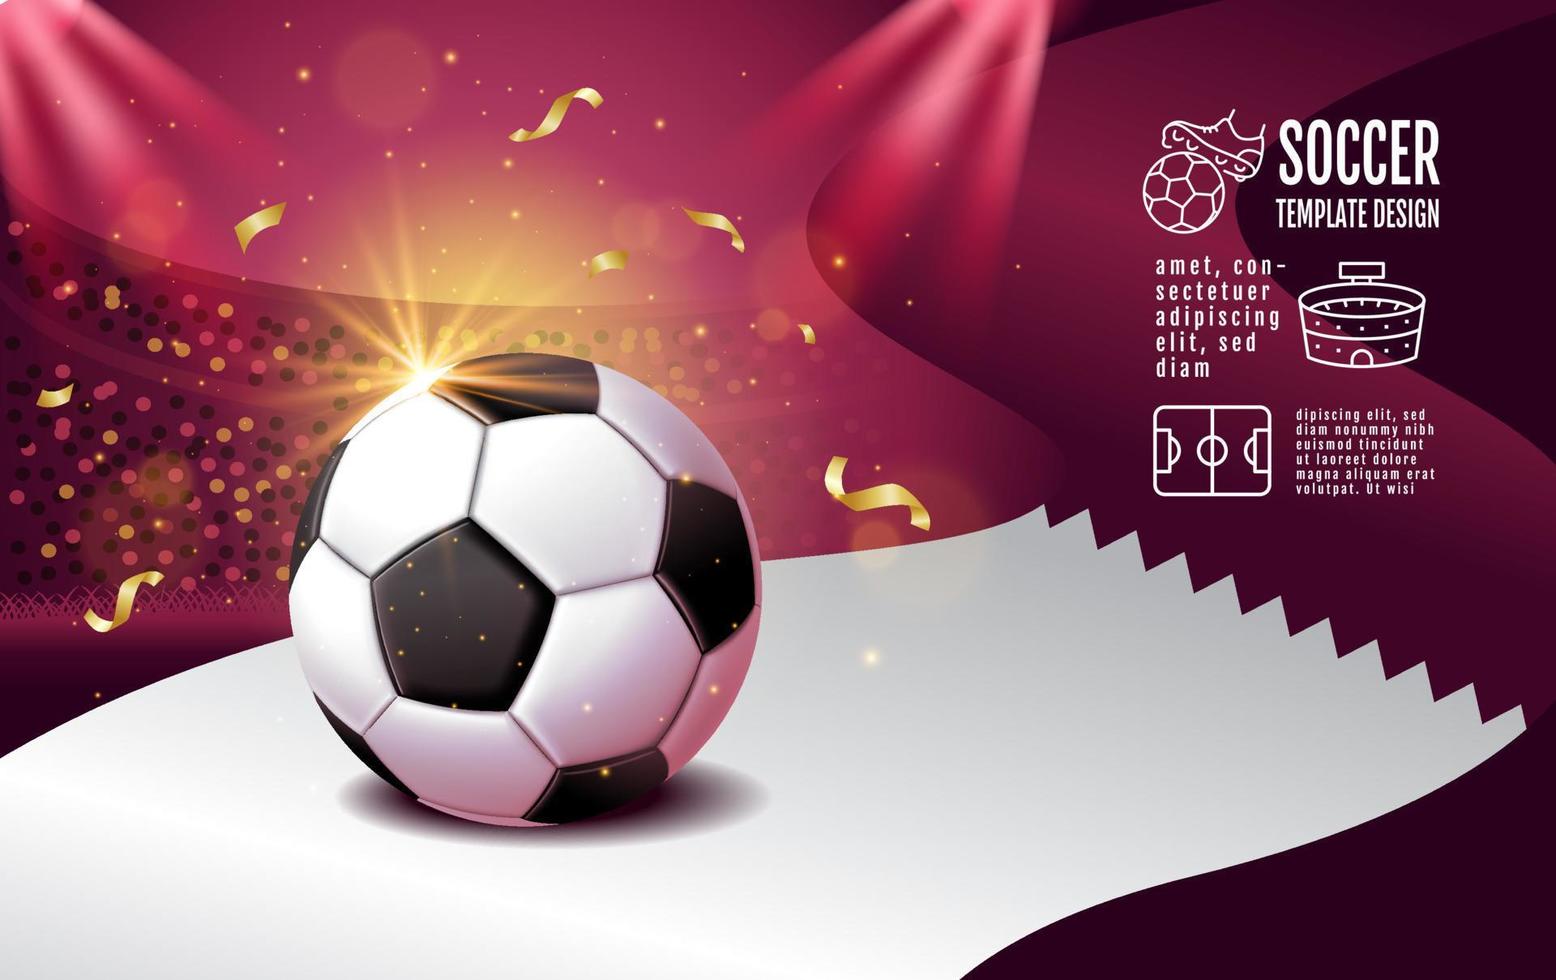 conception de modèle de mise en page de football, football, ton magenta violet, fond de concept de drapeau qatar vecteur